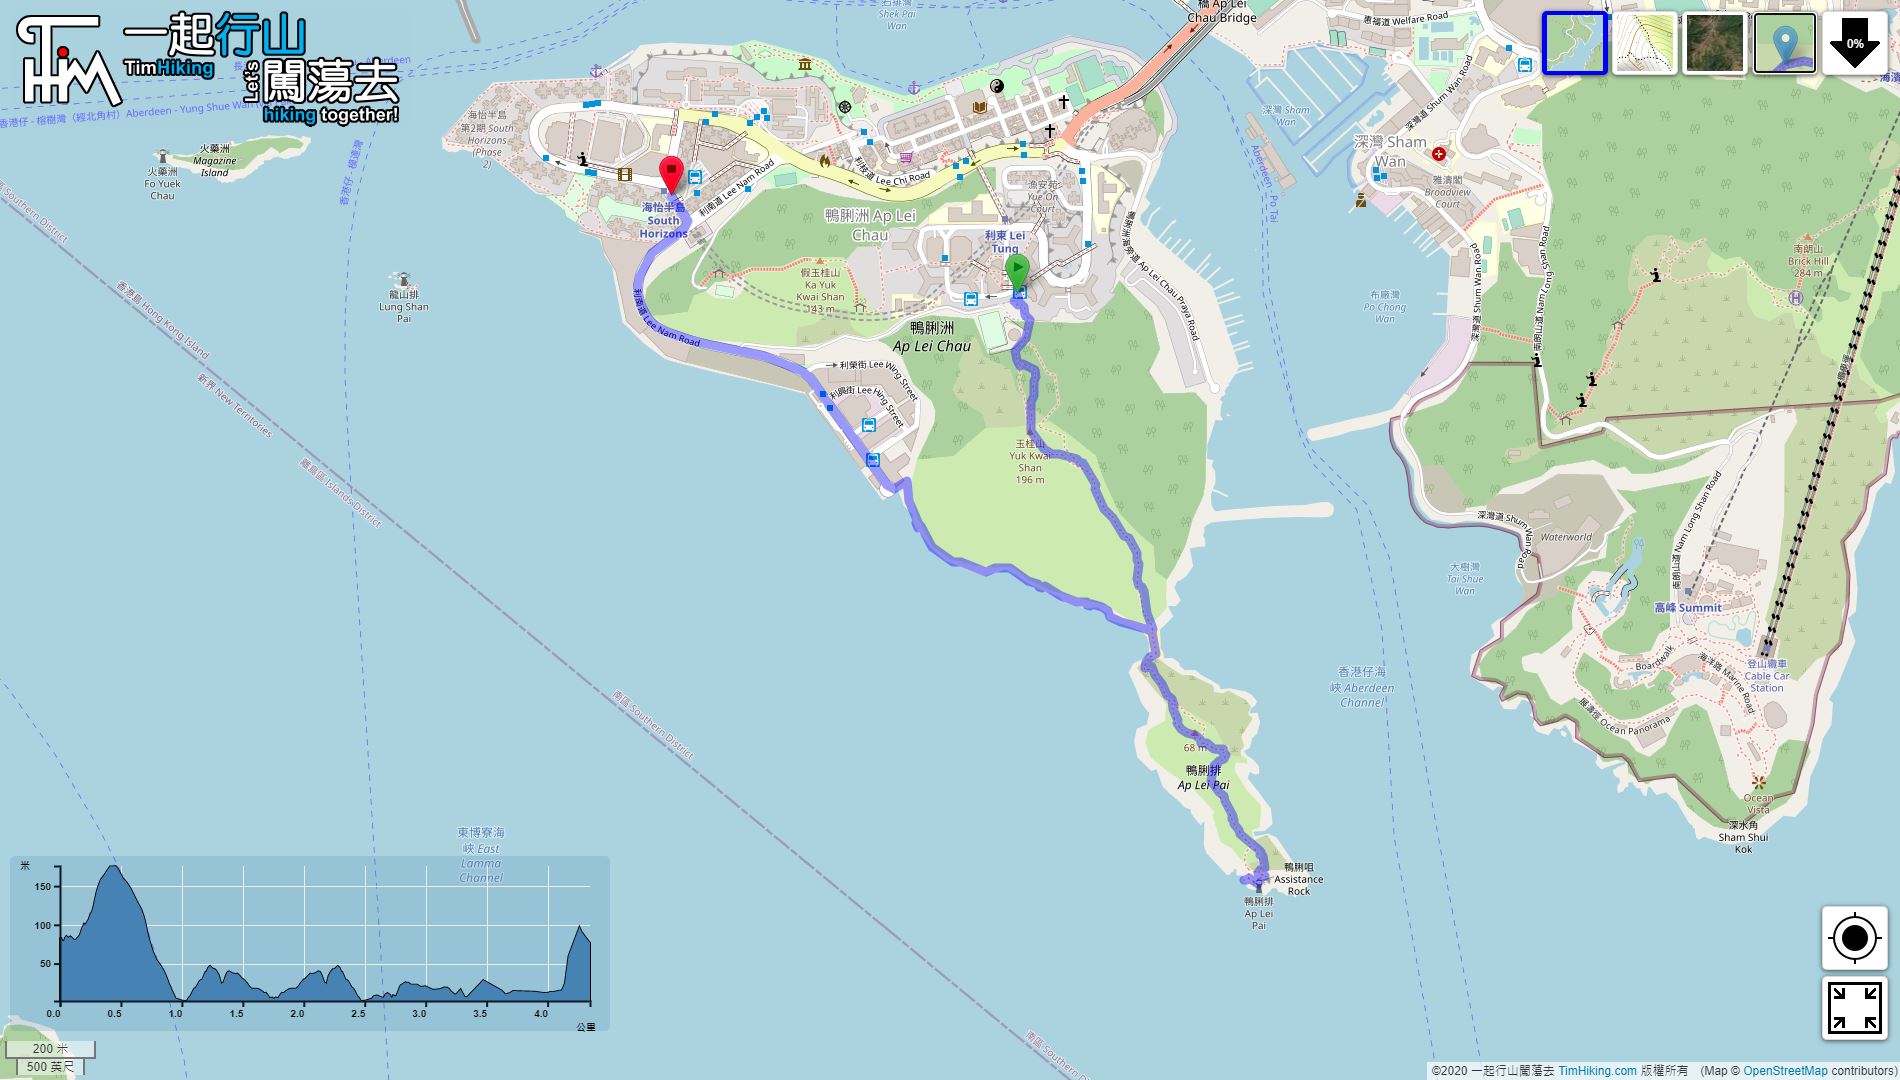 “将军澳跨湾大桥单车径”路线地图